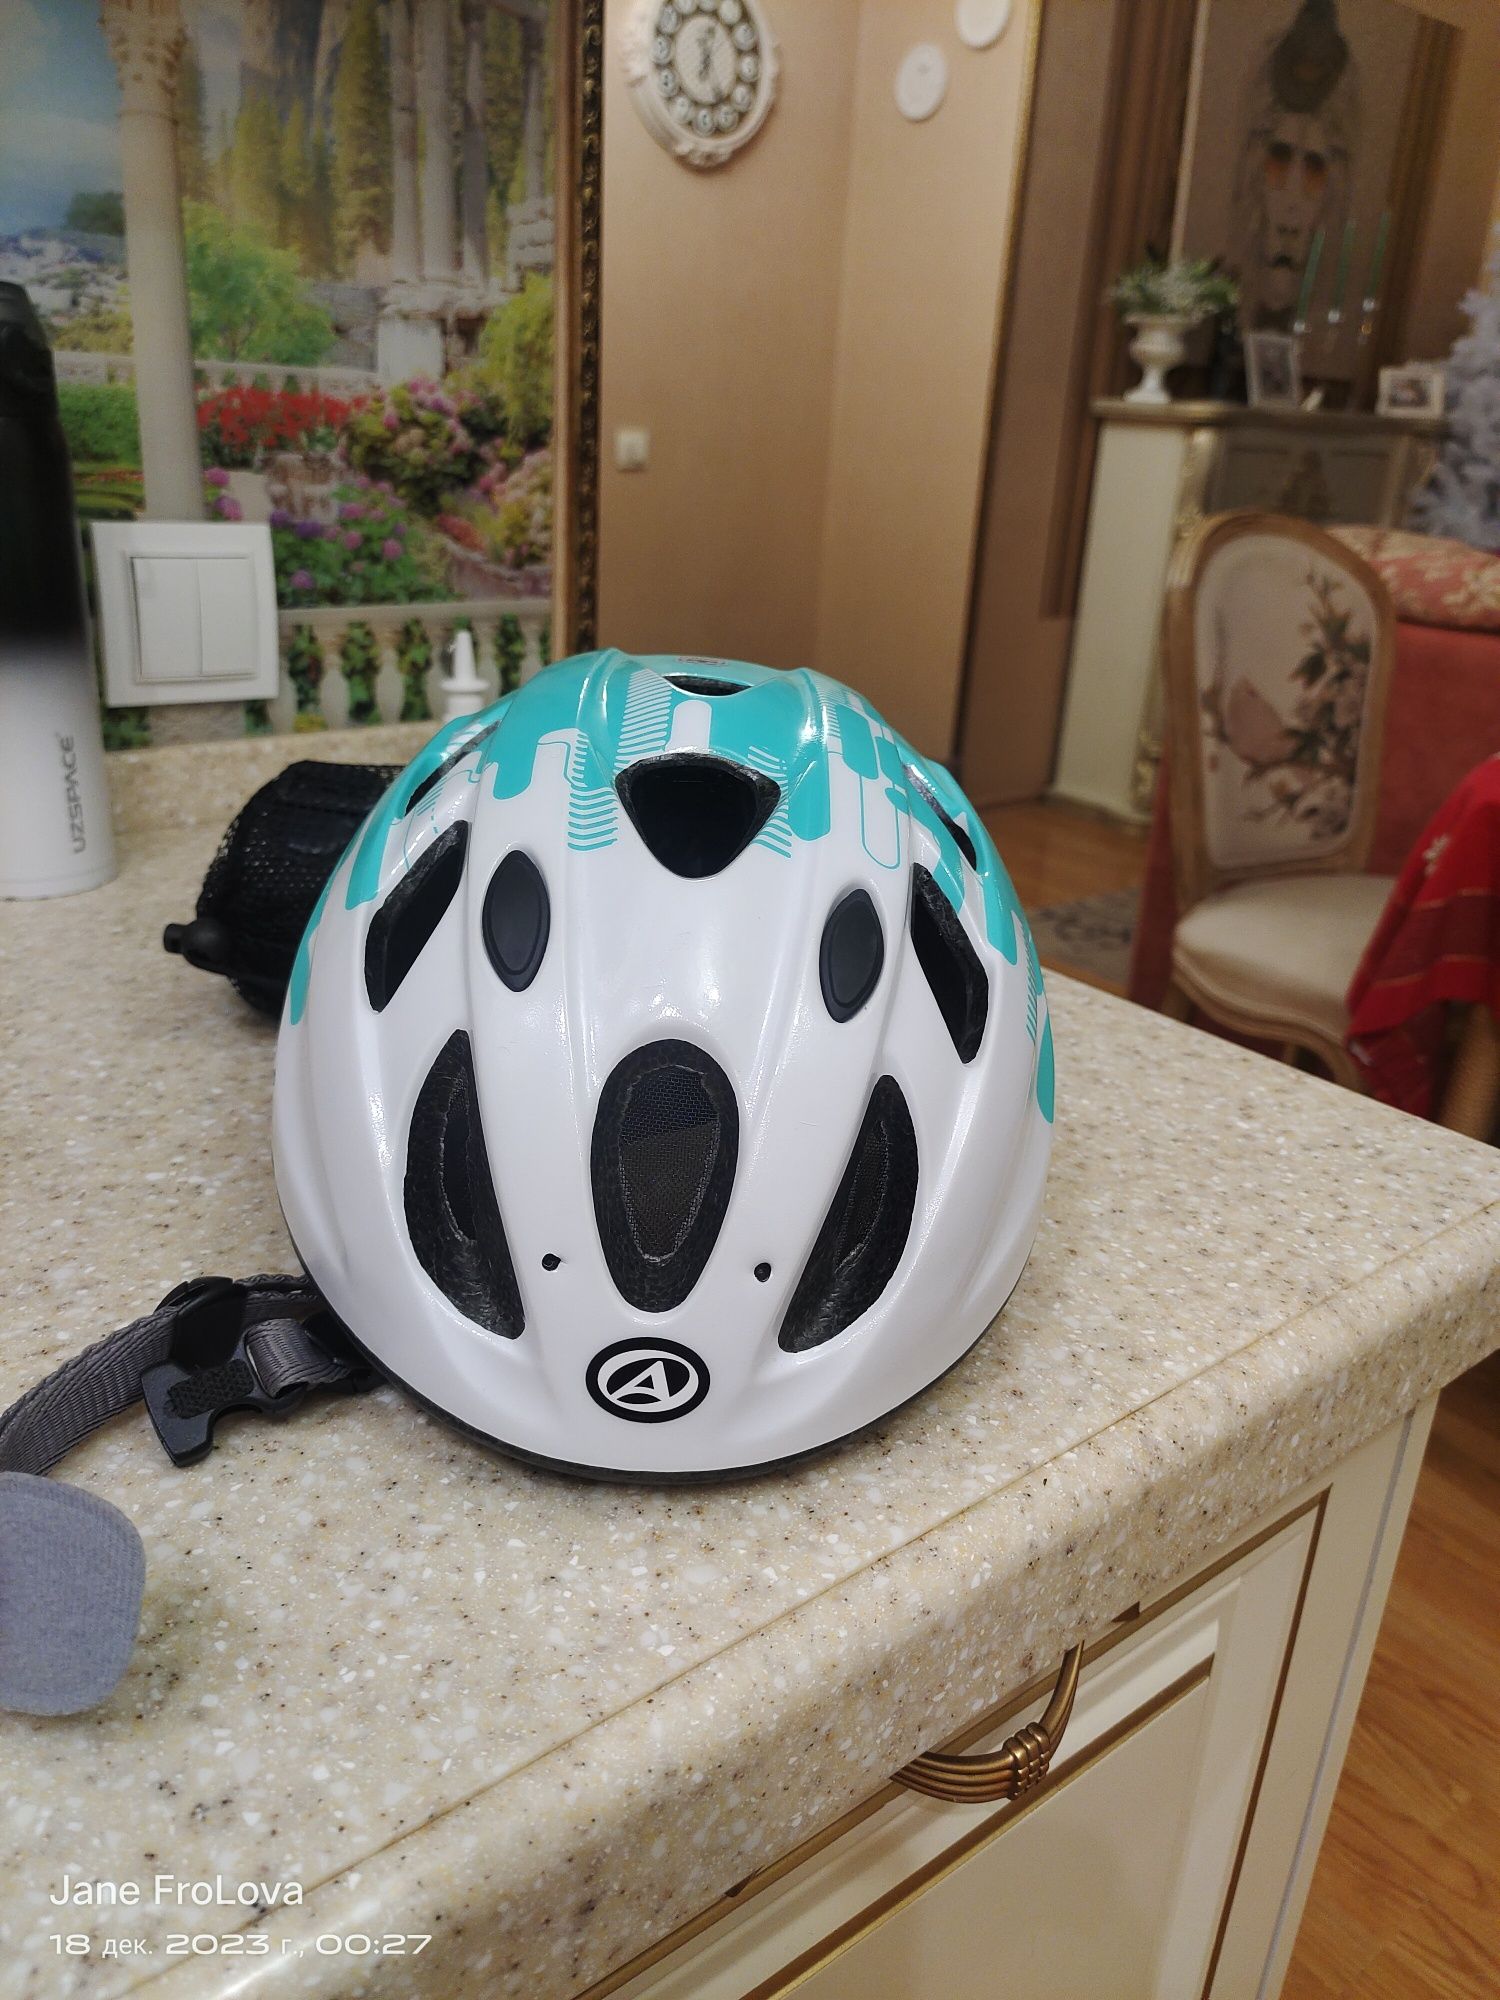 Продам велосипедный шлем